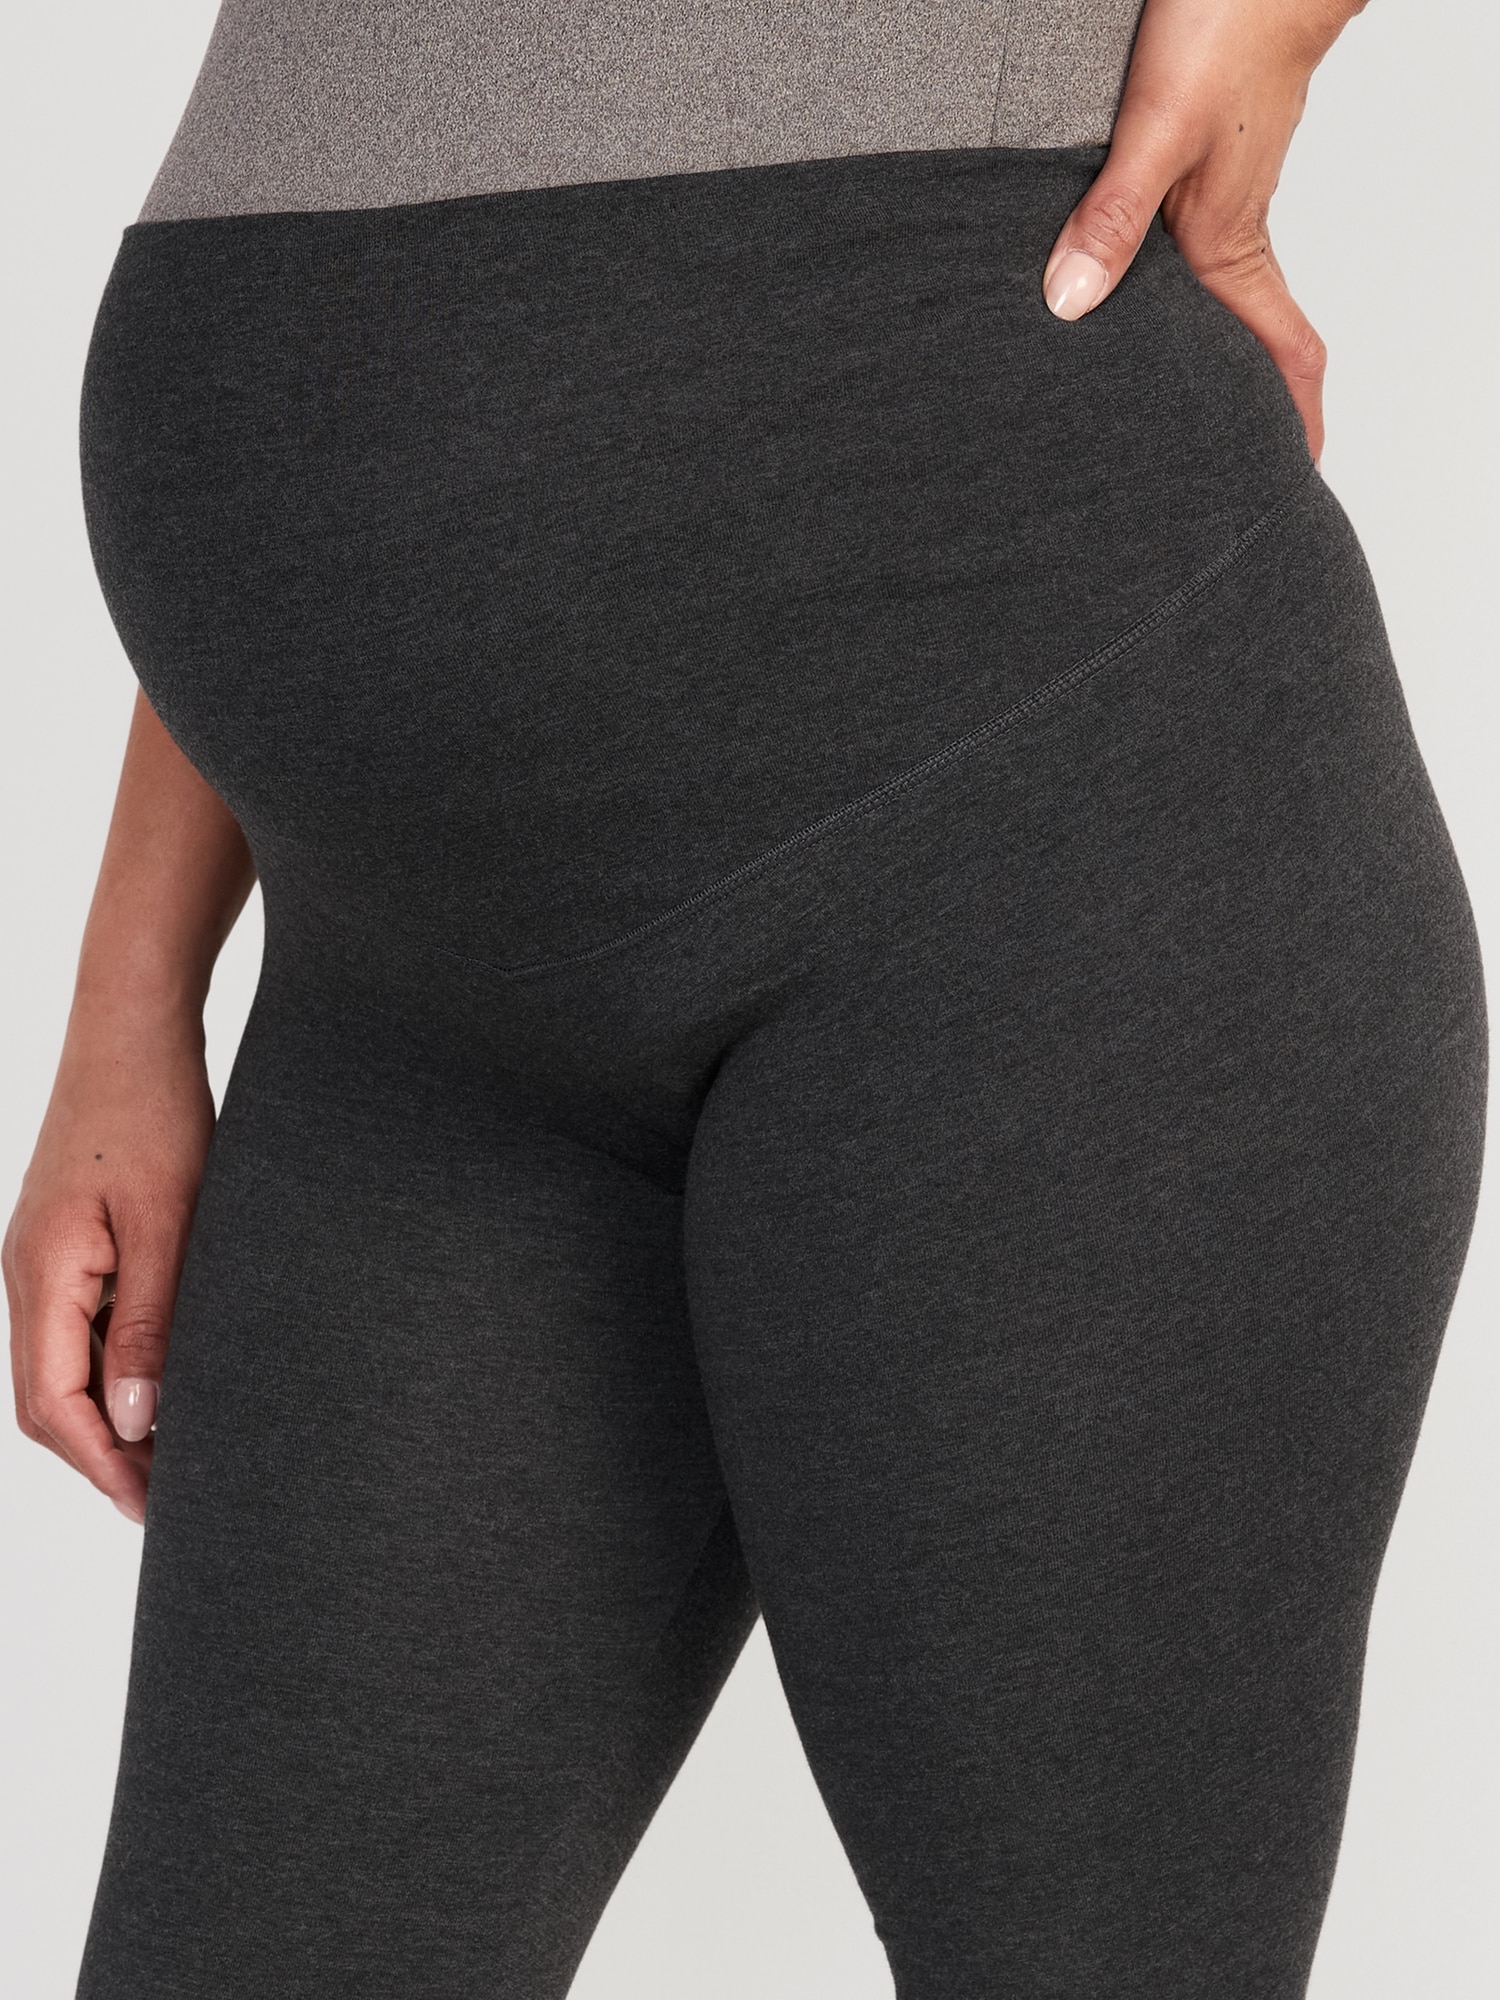 PLUS Size Maternity Leggings-Full Length - Grey & Navy